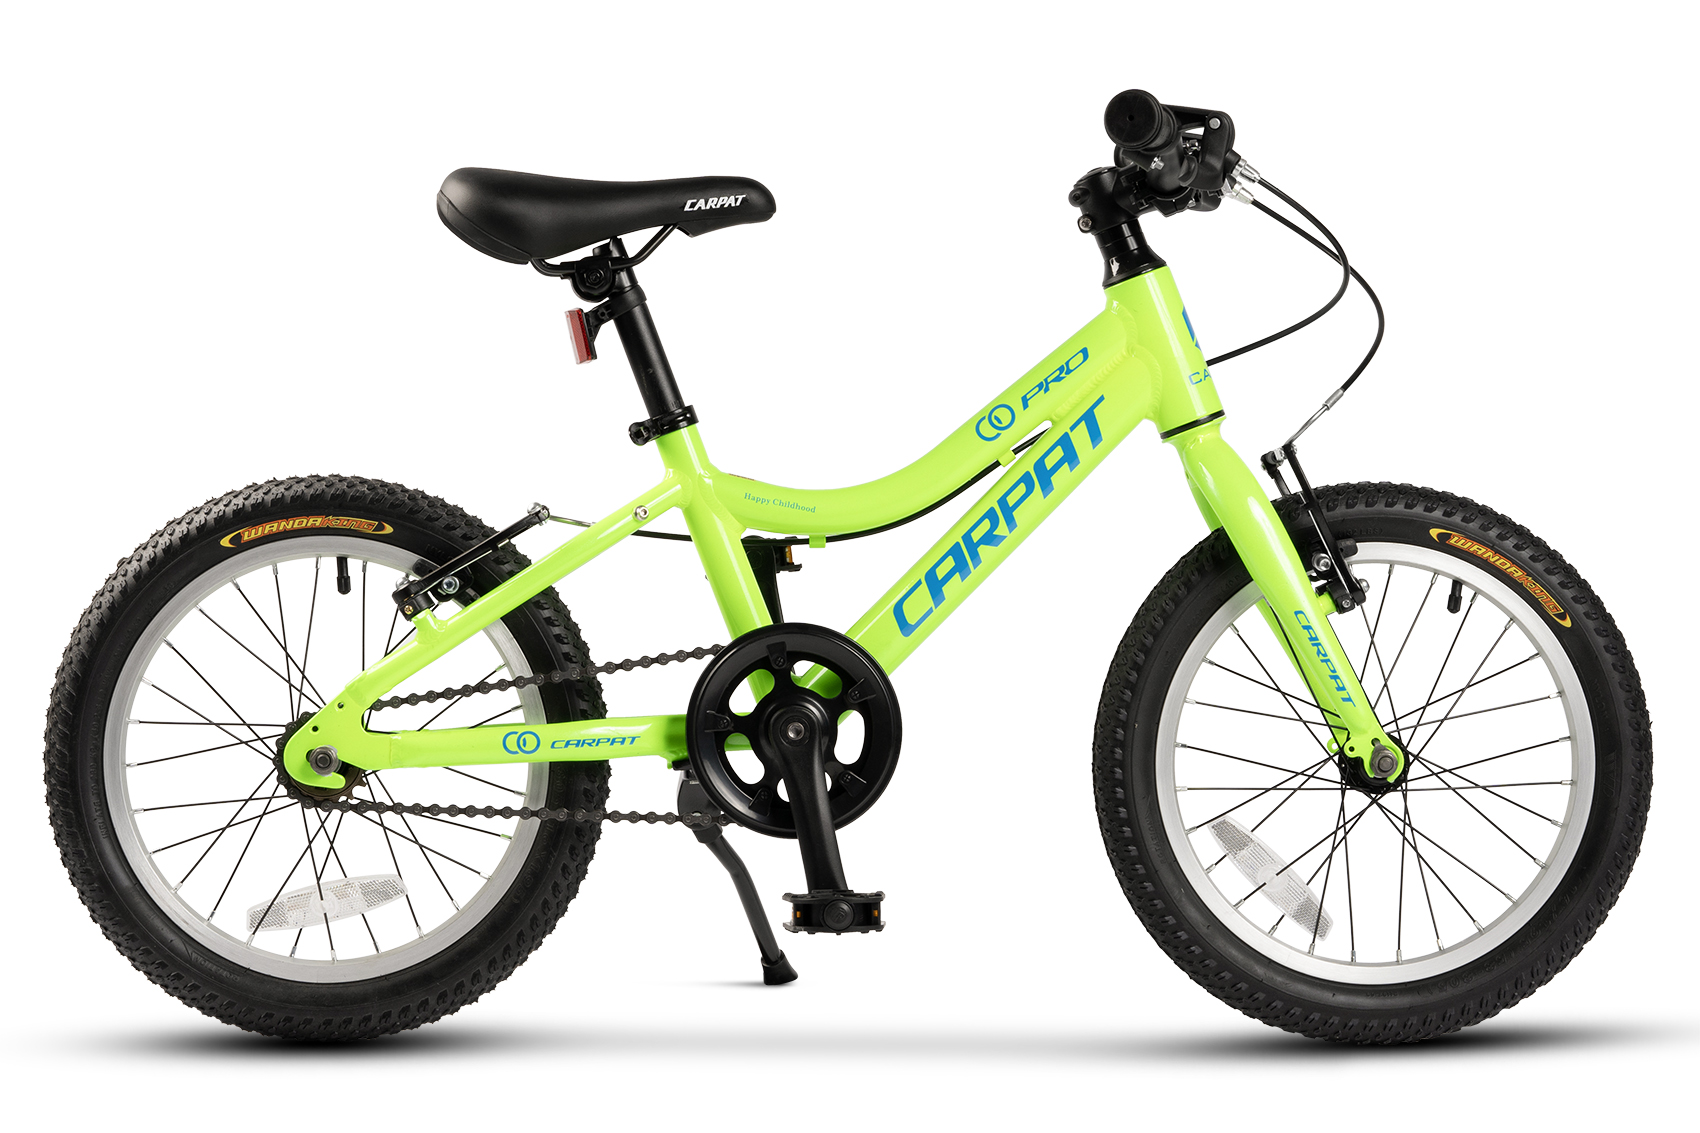 BICICLETE PENTRU COPII - ﻿﻿Bicicleta Copii 4-6 ani Carpat C16208C 16", Verde/Albastru, https:carpatsport.ro